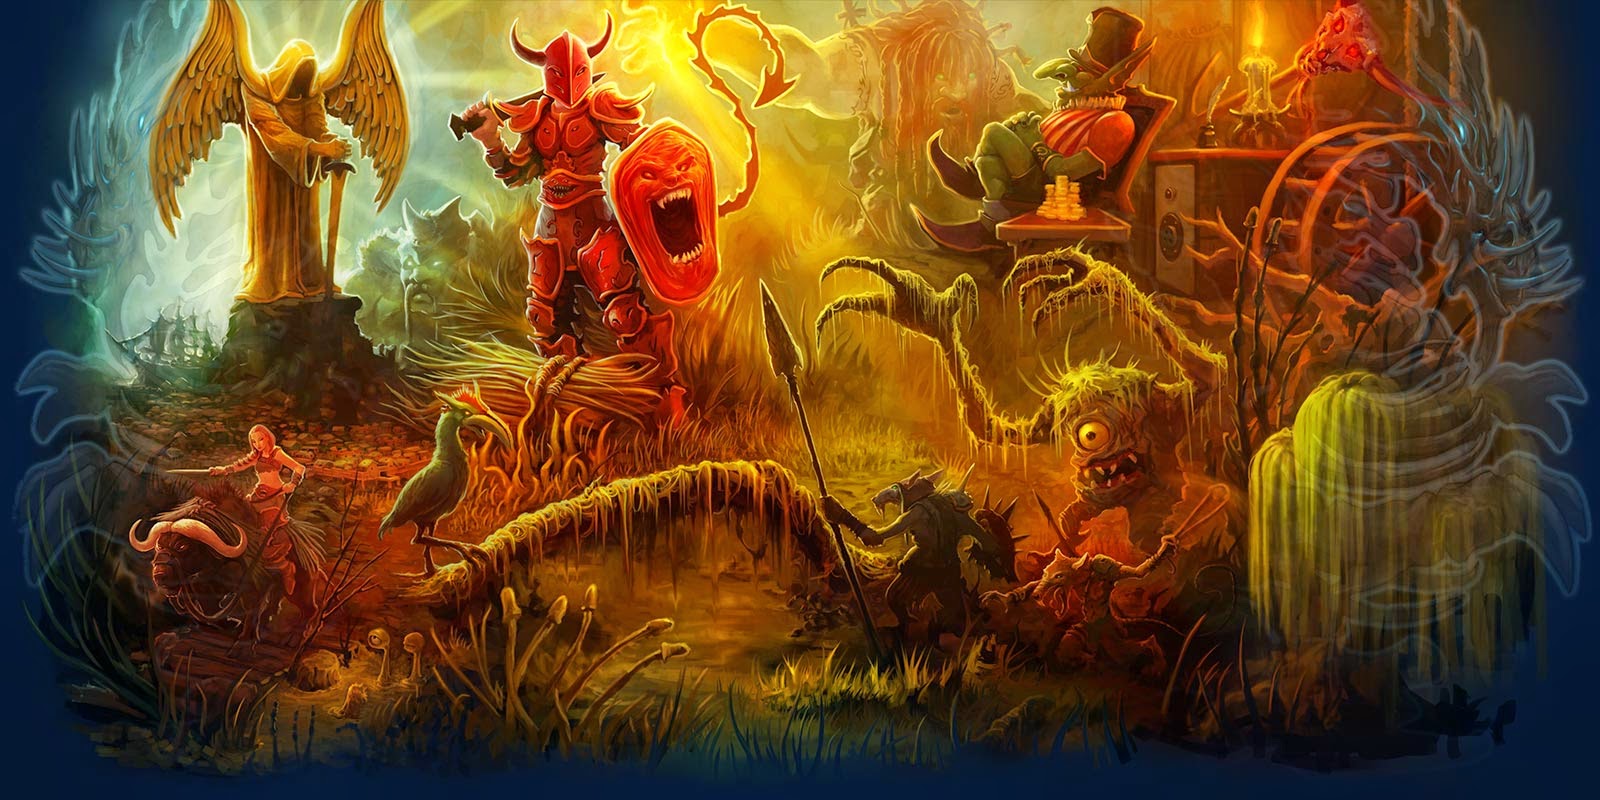 The Tavern Online é um MMORPG brasileiro inspirado em Tibia e outros jogos  do gênero